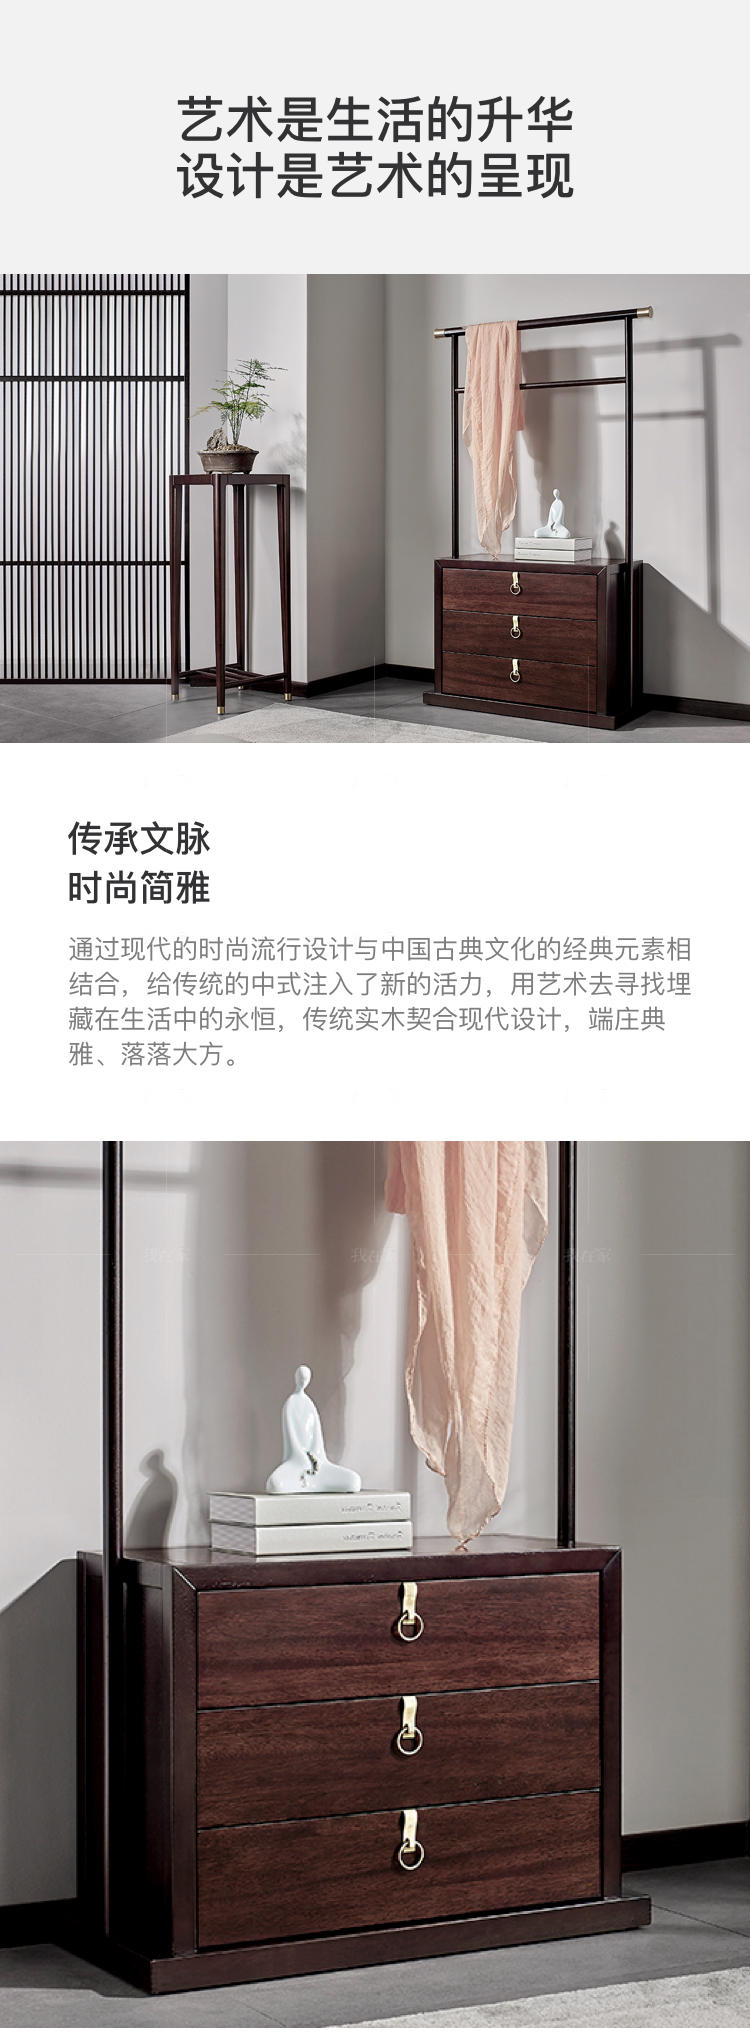 新中式风格似锦衣帽架的家具详细介绍